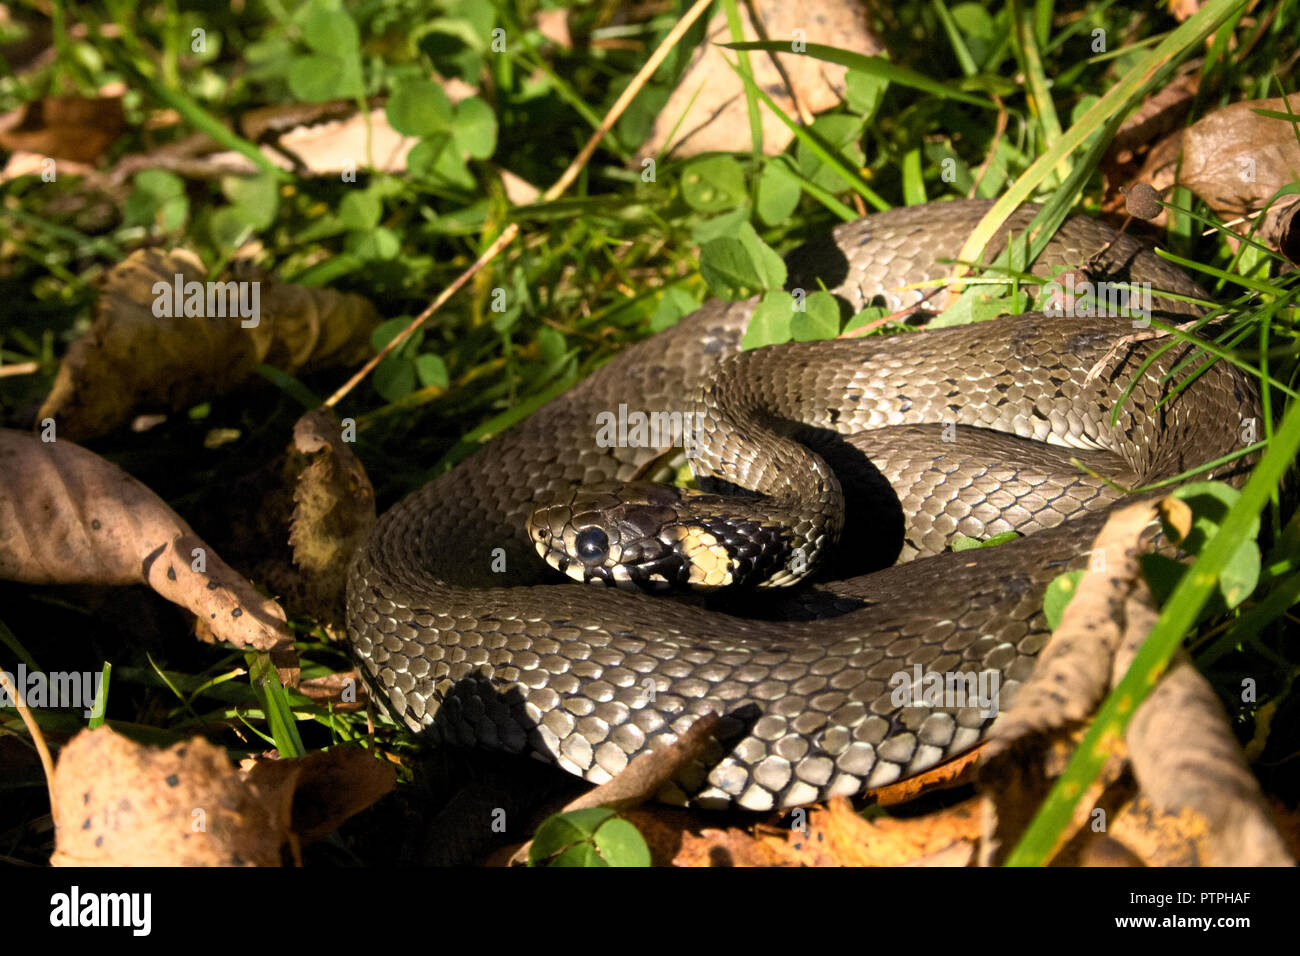 Natrix est un genre de serpents colubridae, des couleuvres ou des serpents d'eau, de repos au soleil entre l'herbe et les feuilles Banque D'Images